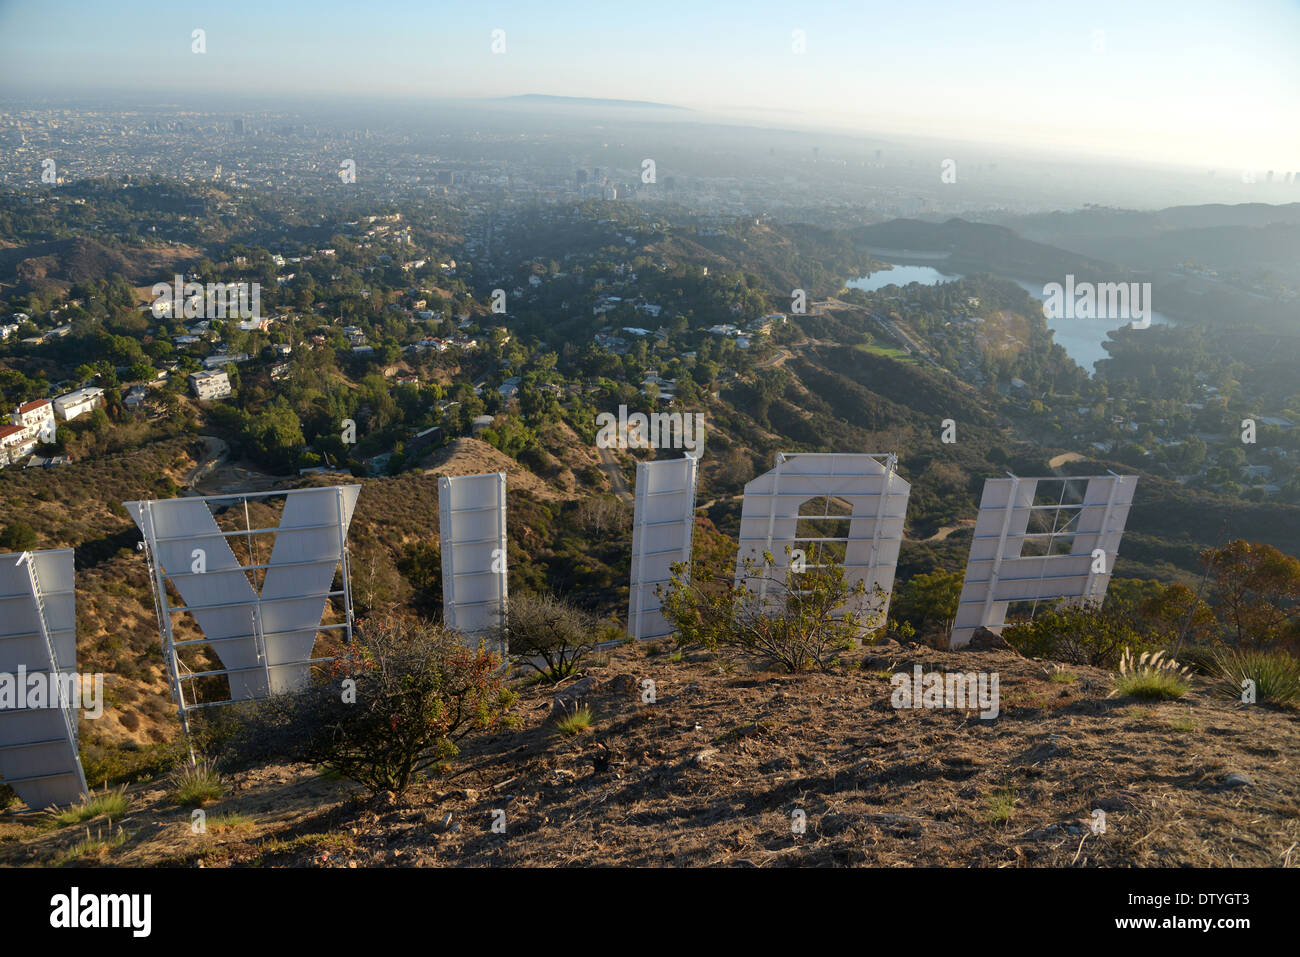 La parte posterior del cartel de Hollywood, en las colinas de Los Angeles, la ciudad se ve abajo Foto de stock